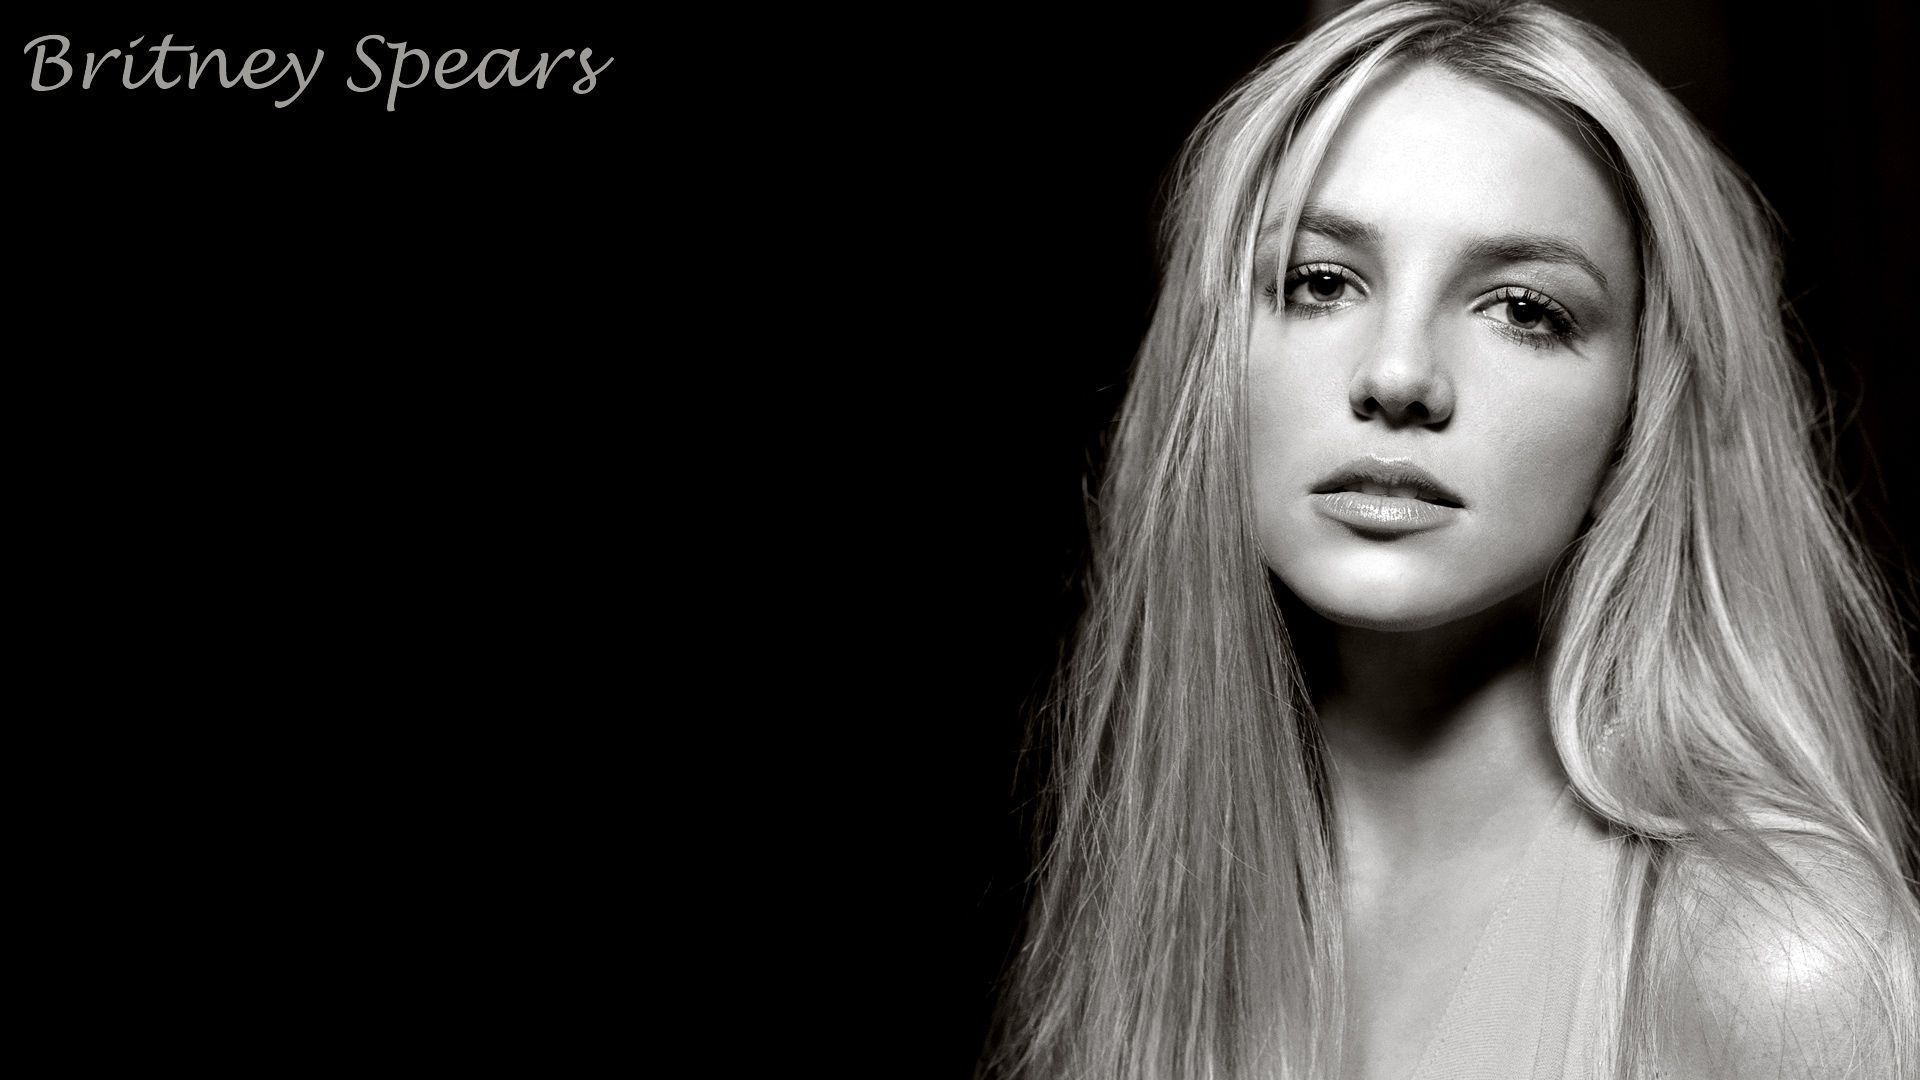 Britney Spears beautiful wallpaper #5 - 1920x1080